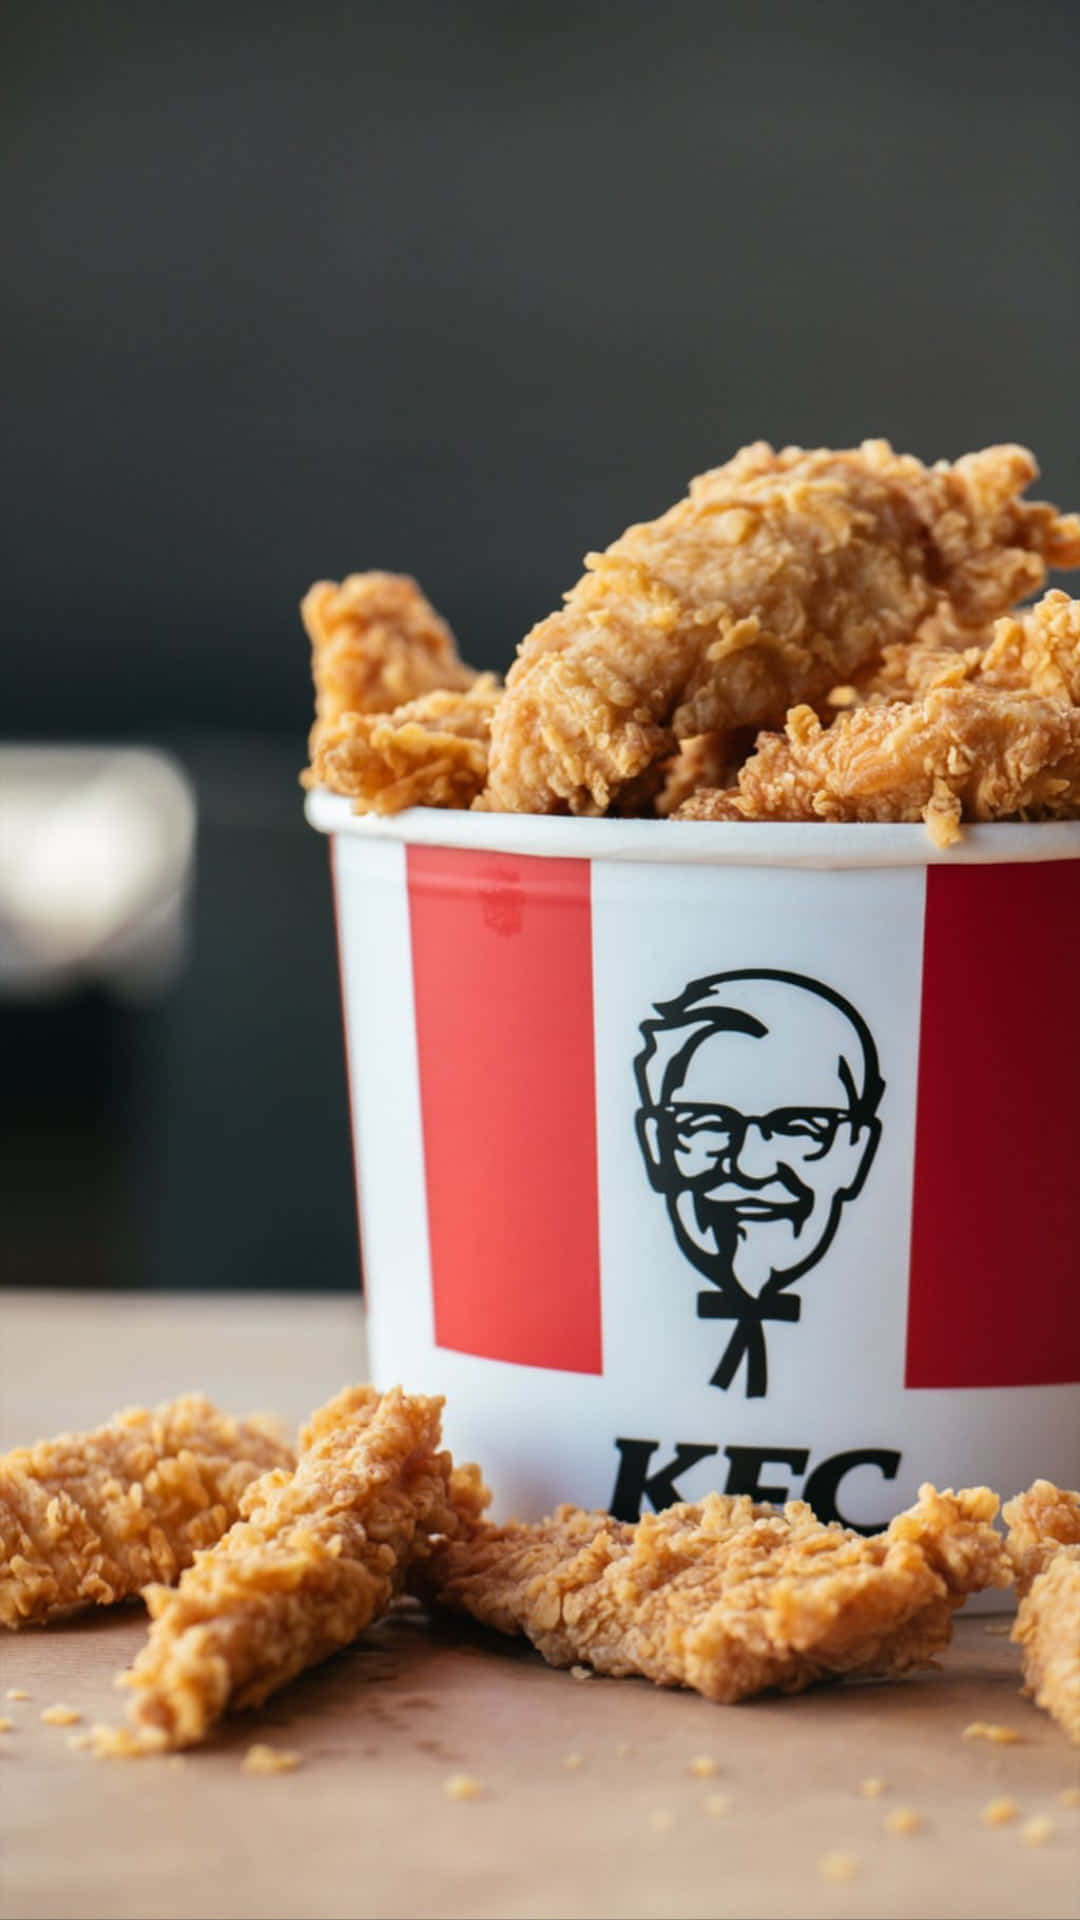 Enjoy delicious original recipes on KFC!